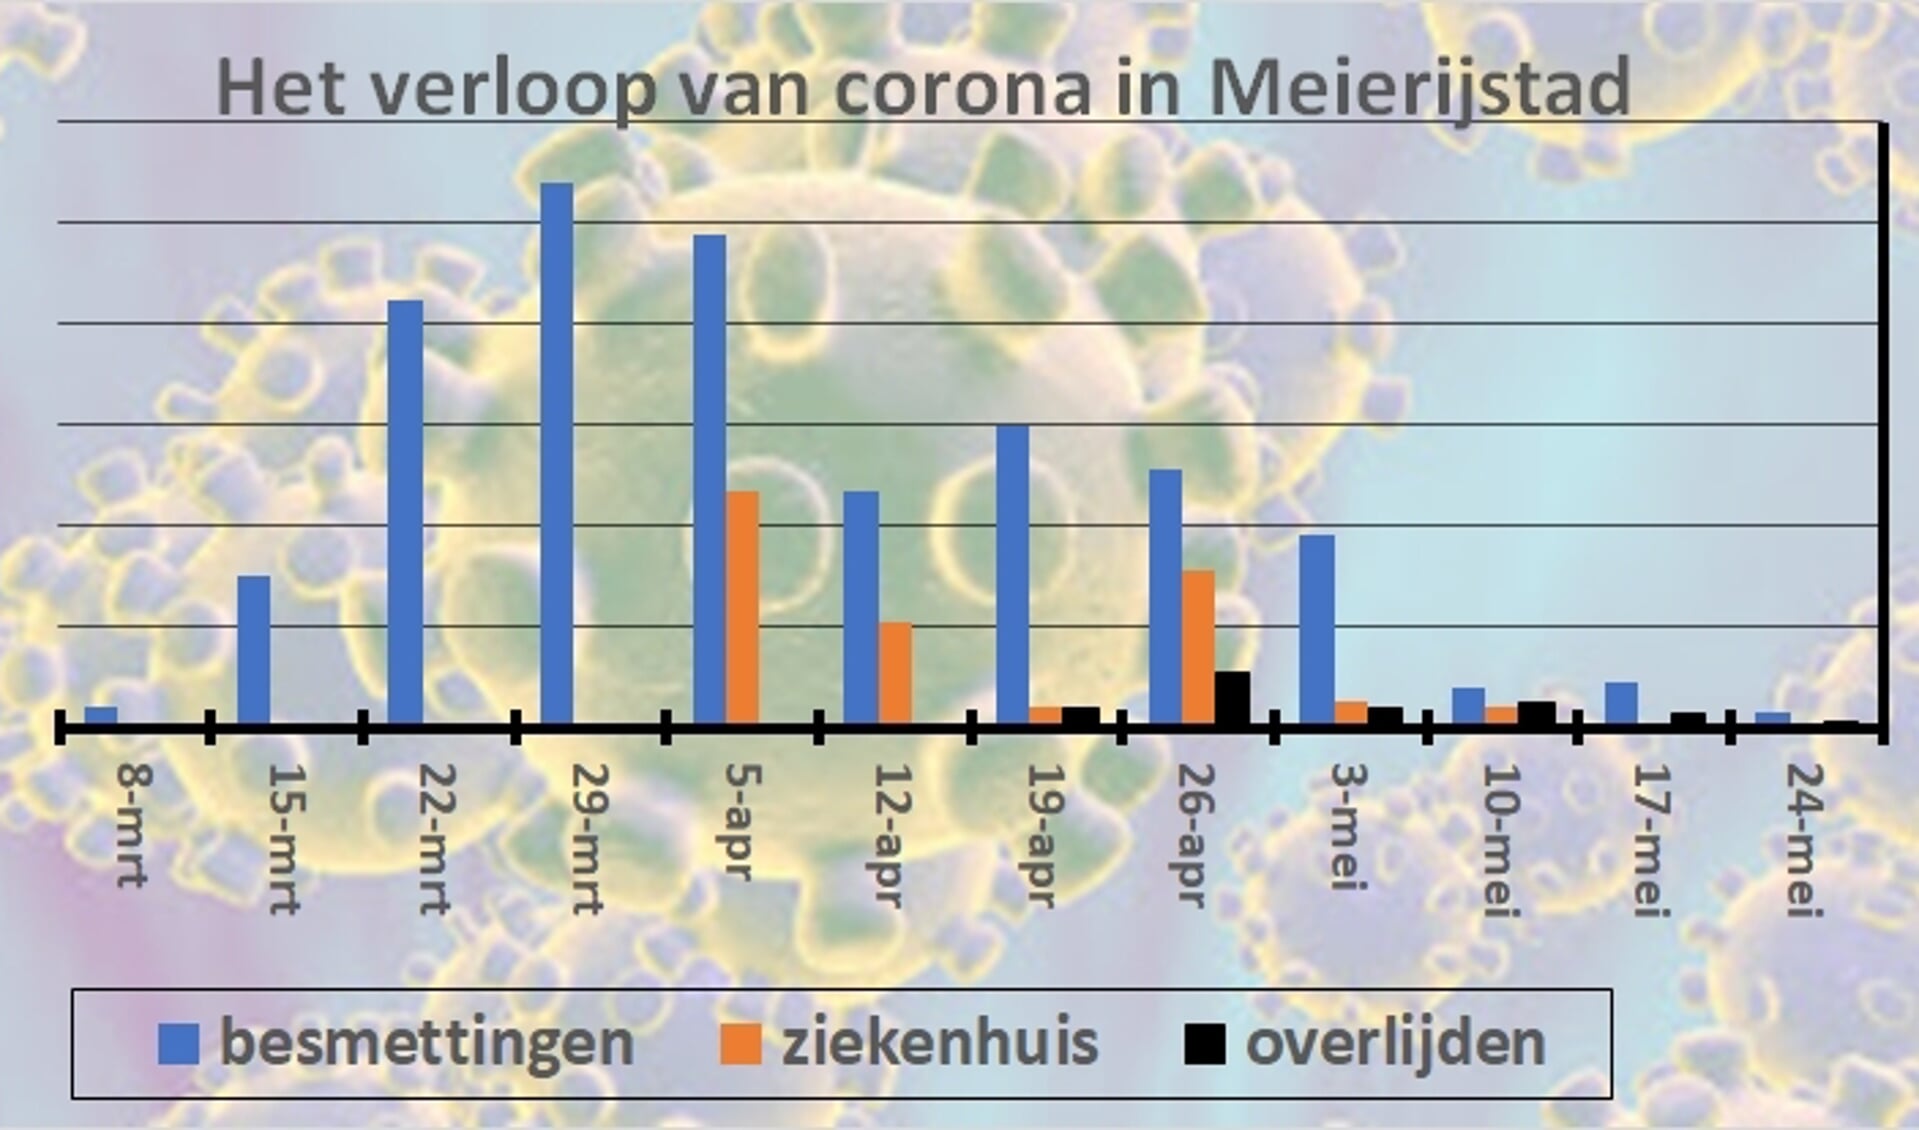 Het verloop van het coronavirus in Meierijstad. De cijfers van ziekenhuis en overlijdens van de eerste weken zijn niet bekend.